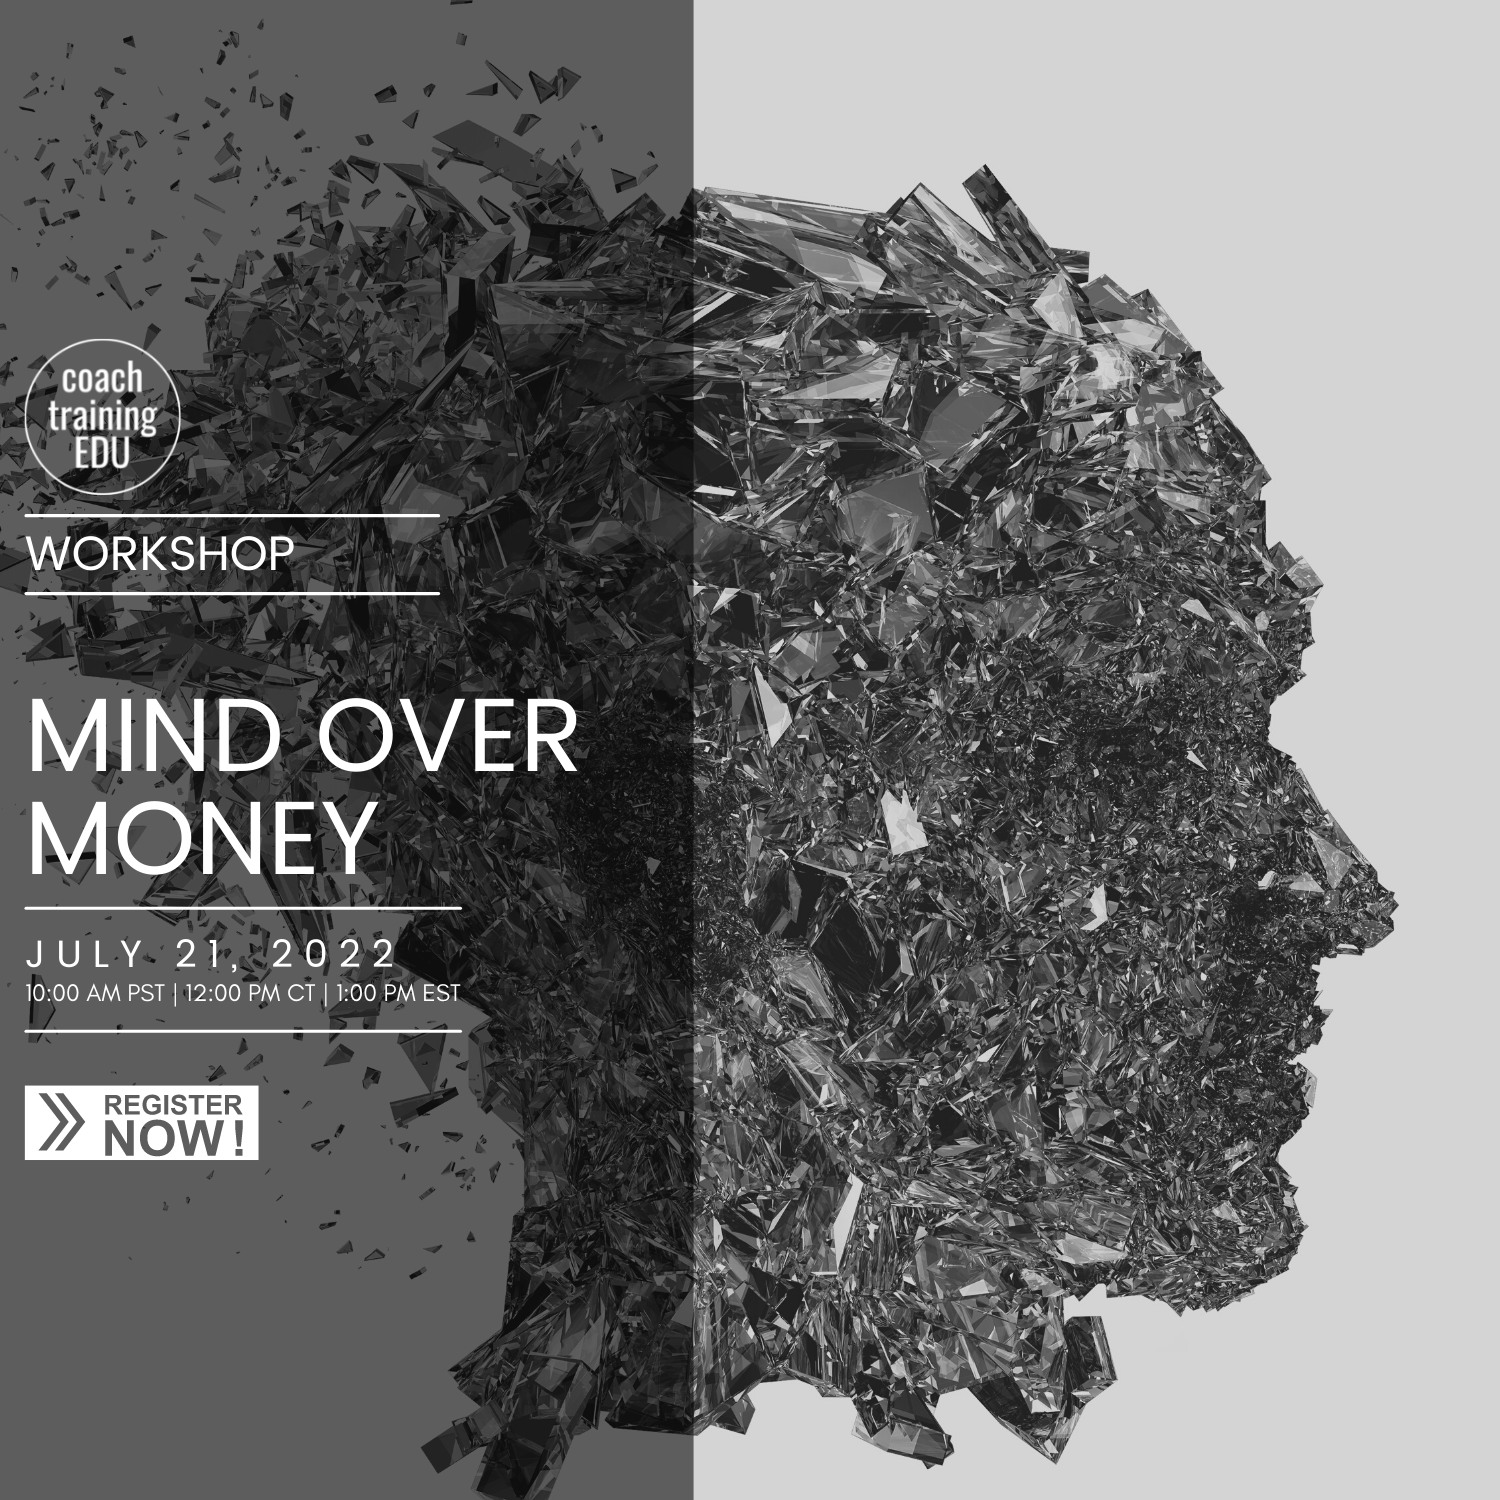 Workshop – MIND OVER MONEY!